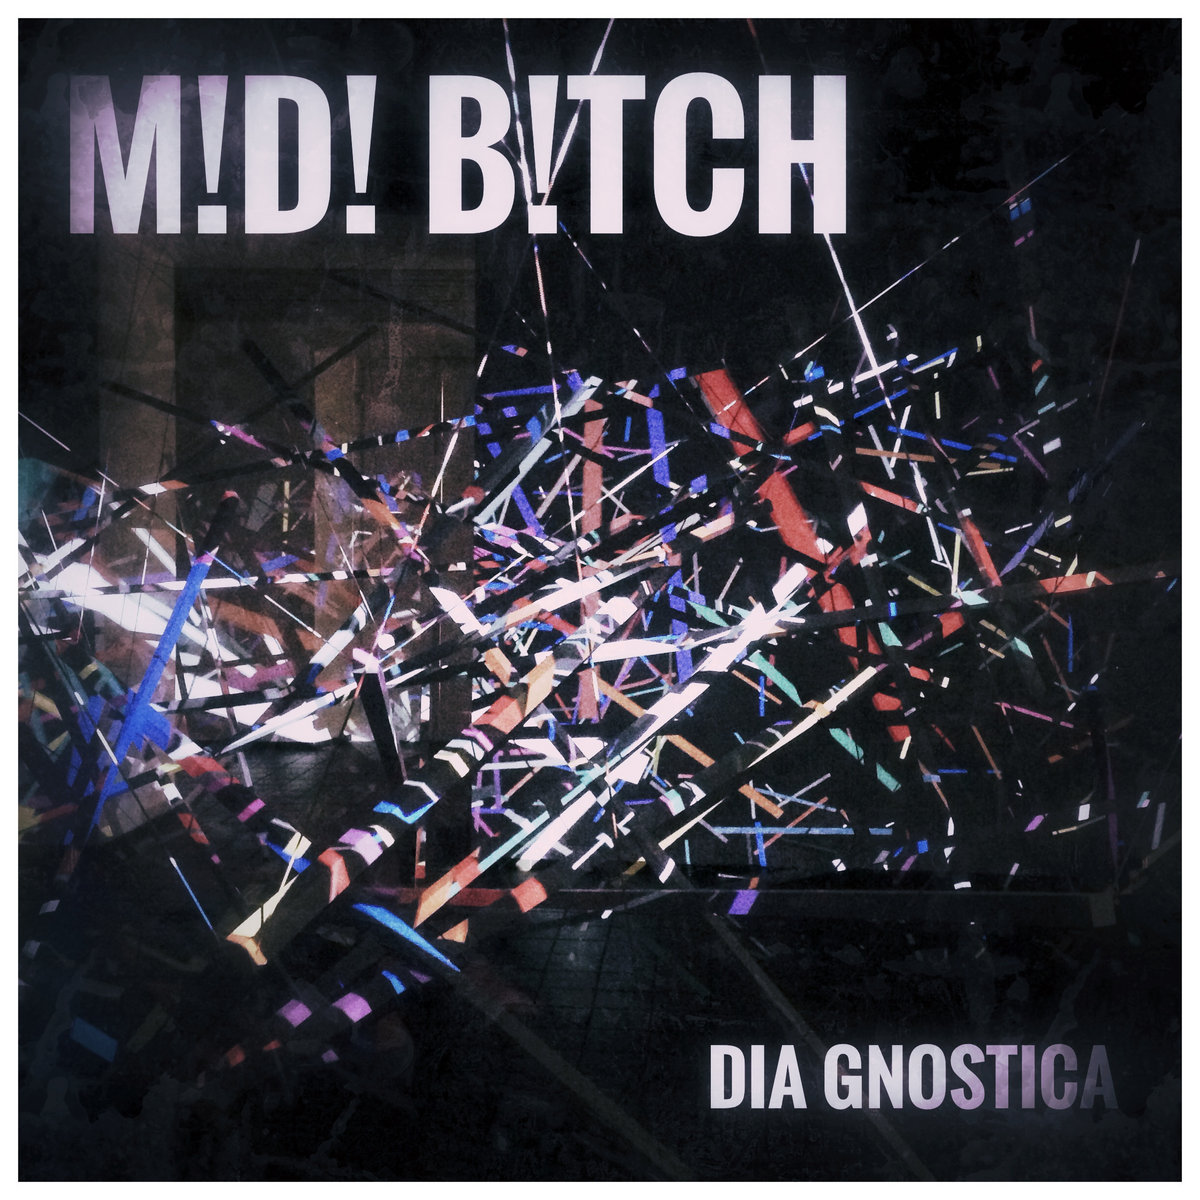 M!D! B!TCH - DIA GNOSTICA (2019)